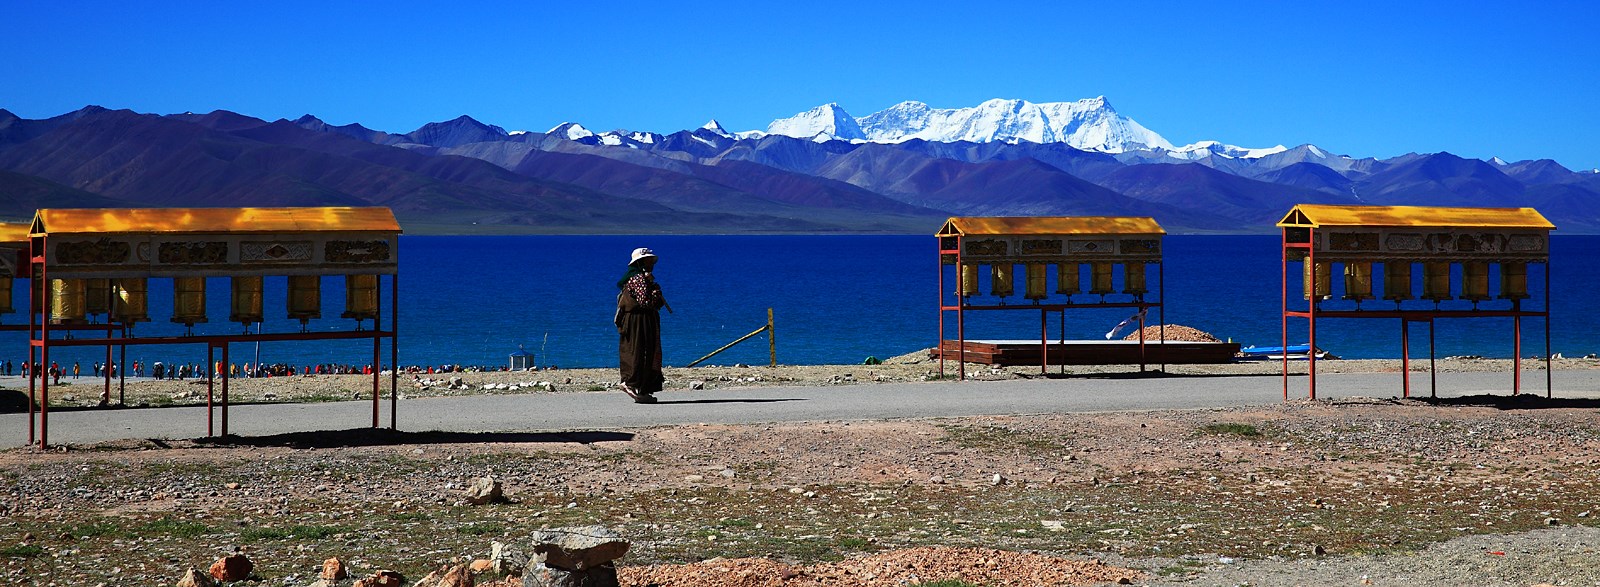 Voyage en Chine via le Tibet